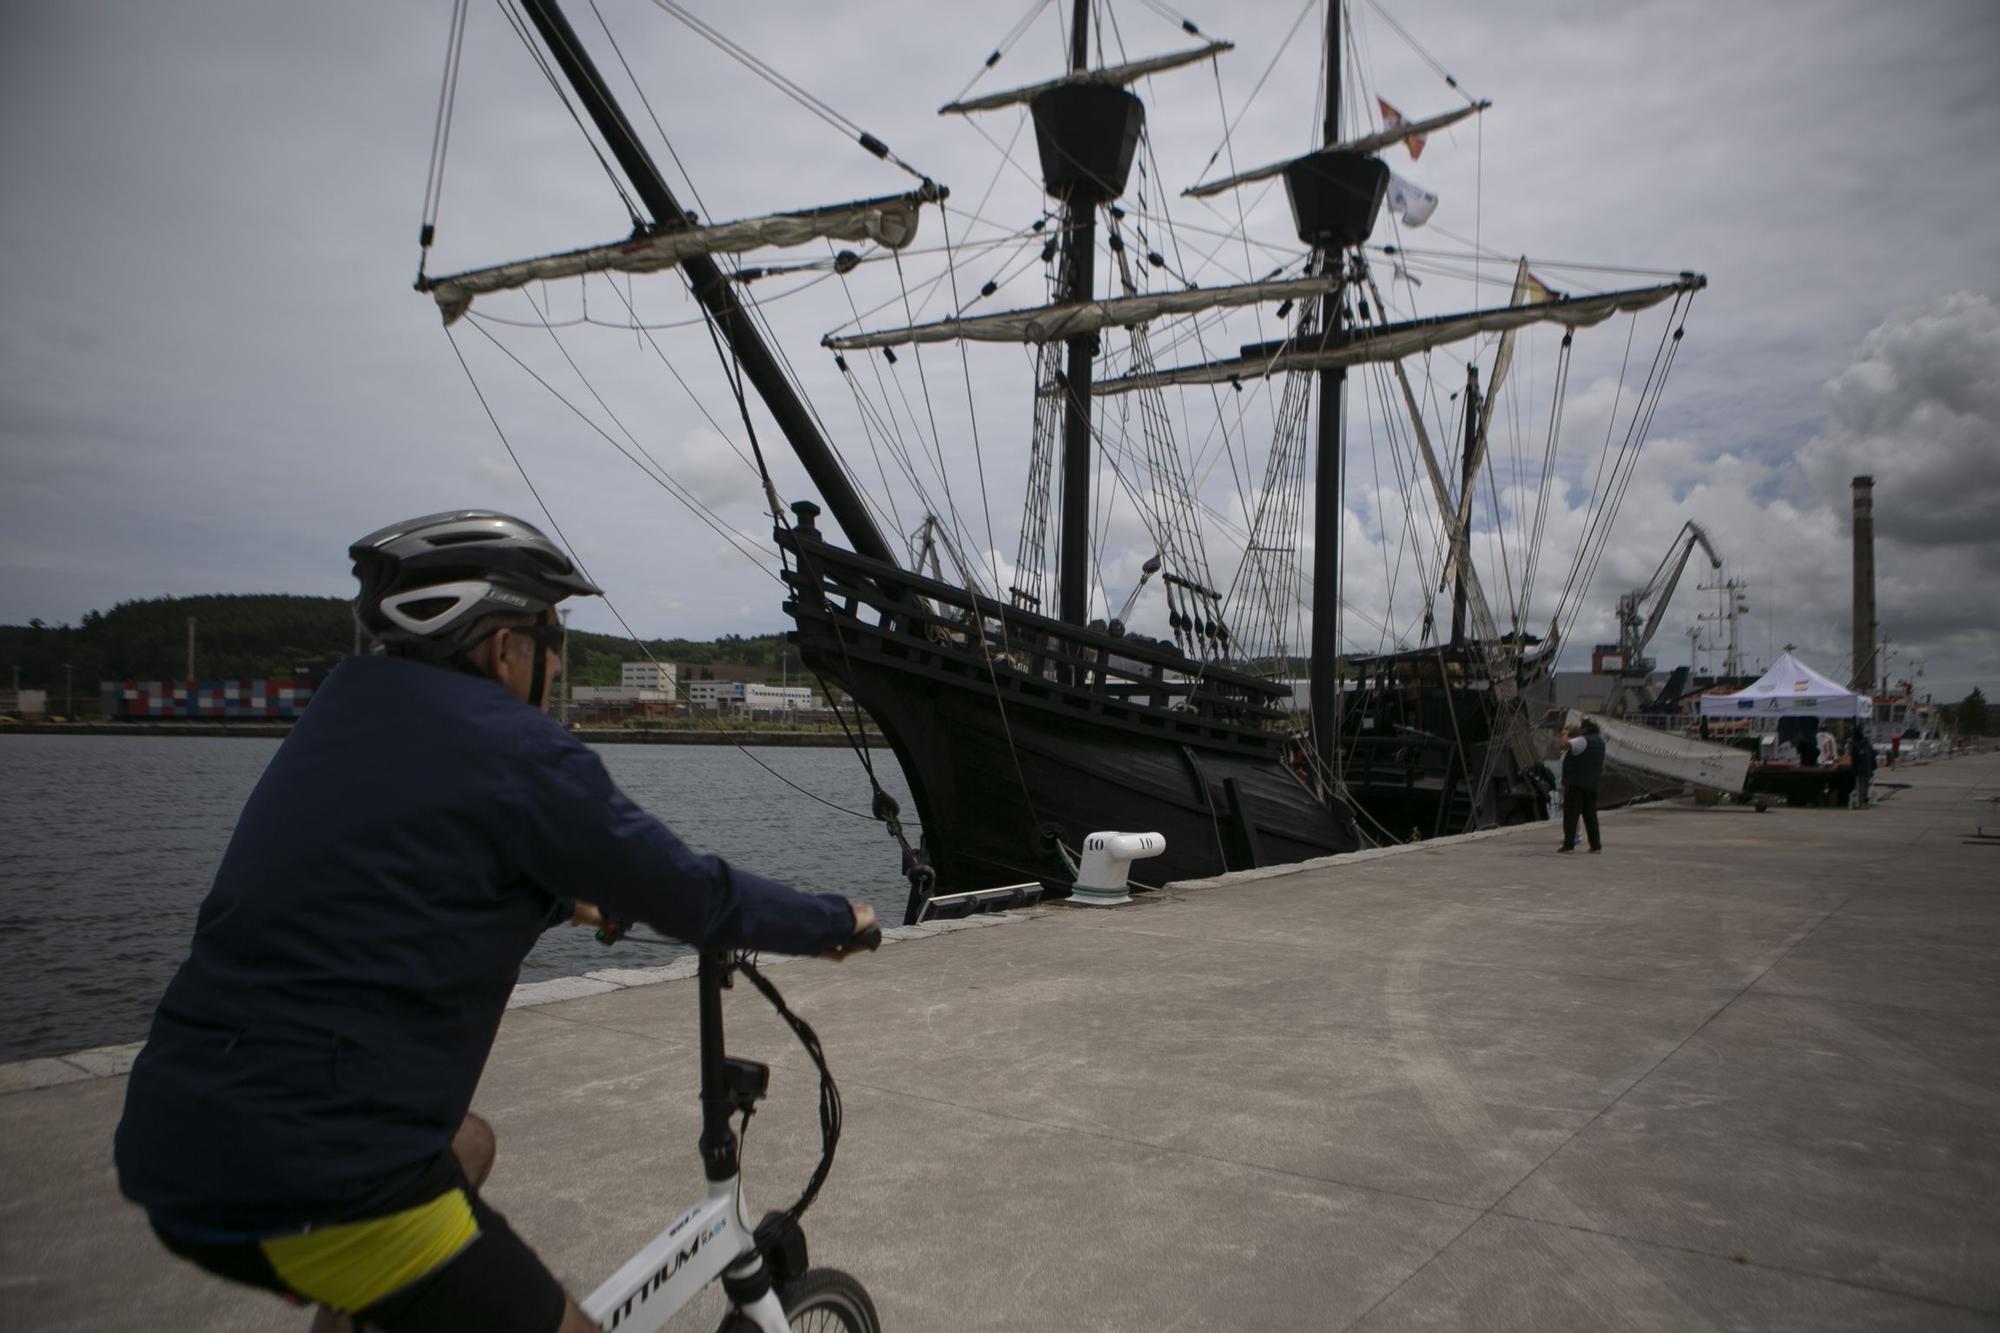 La nao "Victoria" atraca en el puerto de Avilés